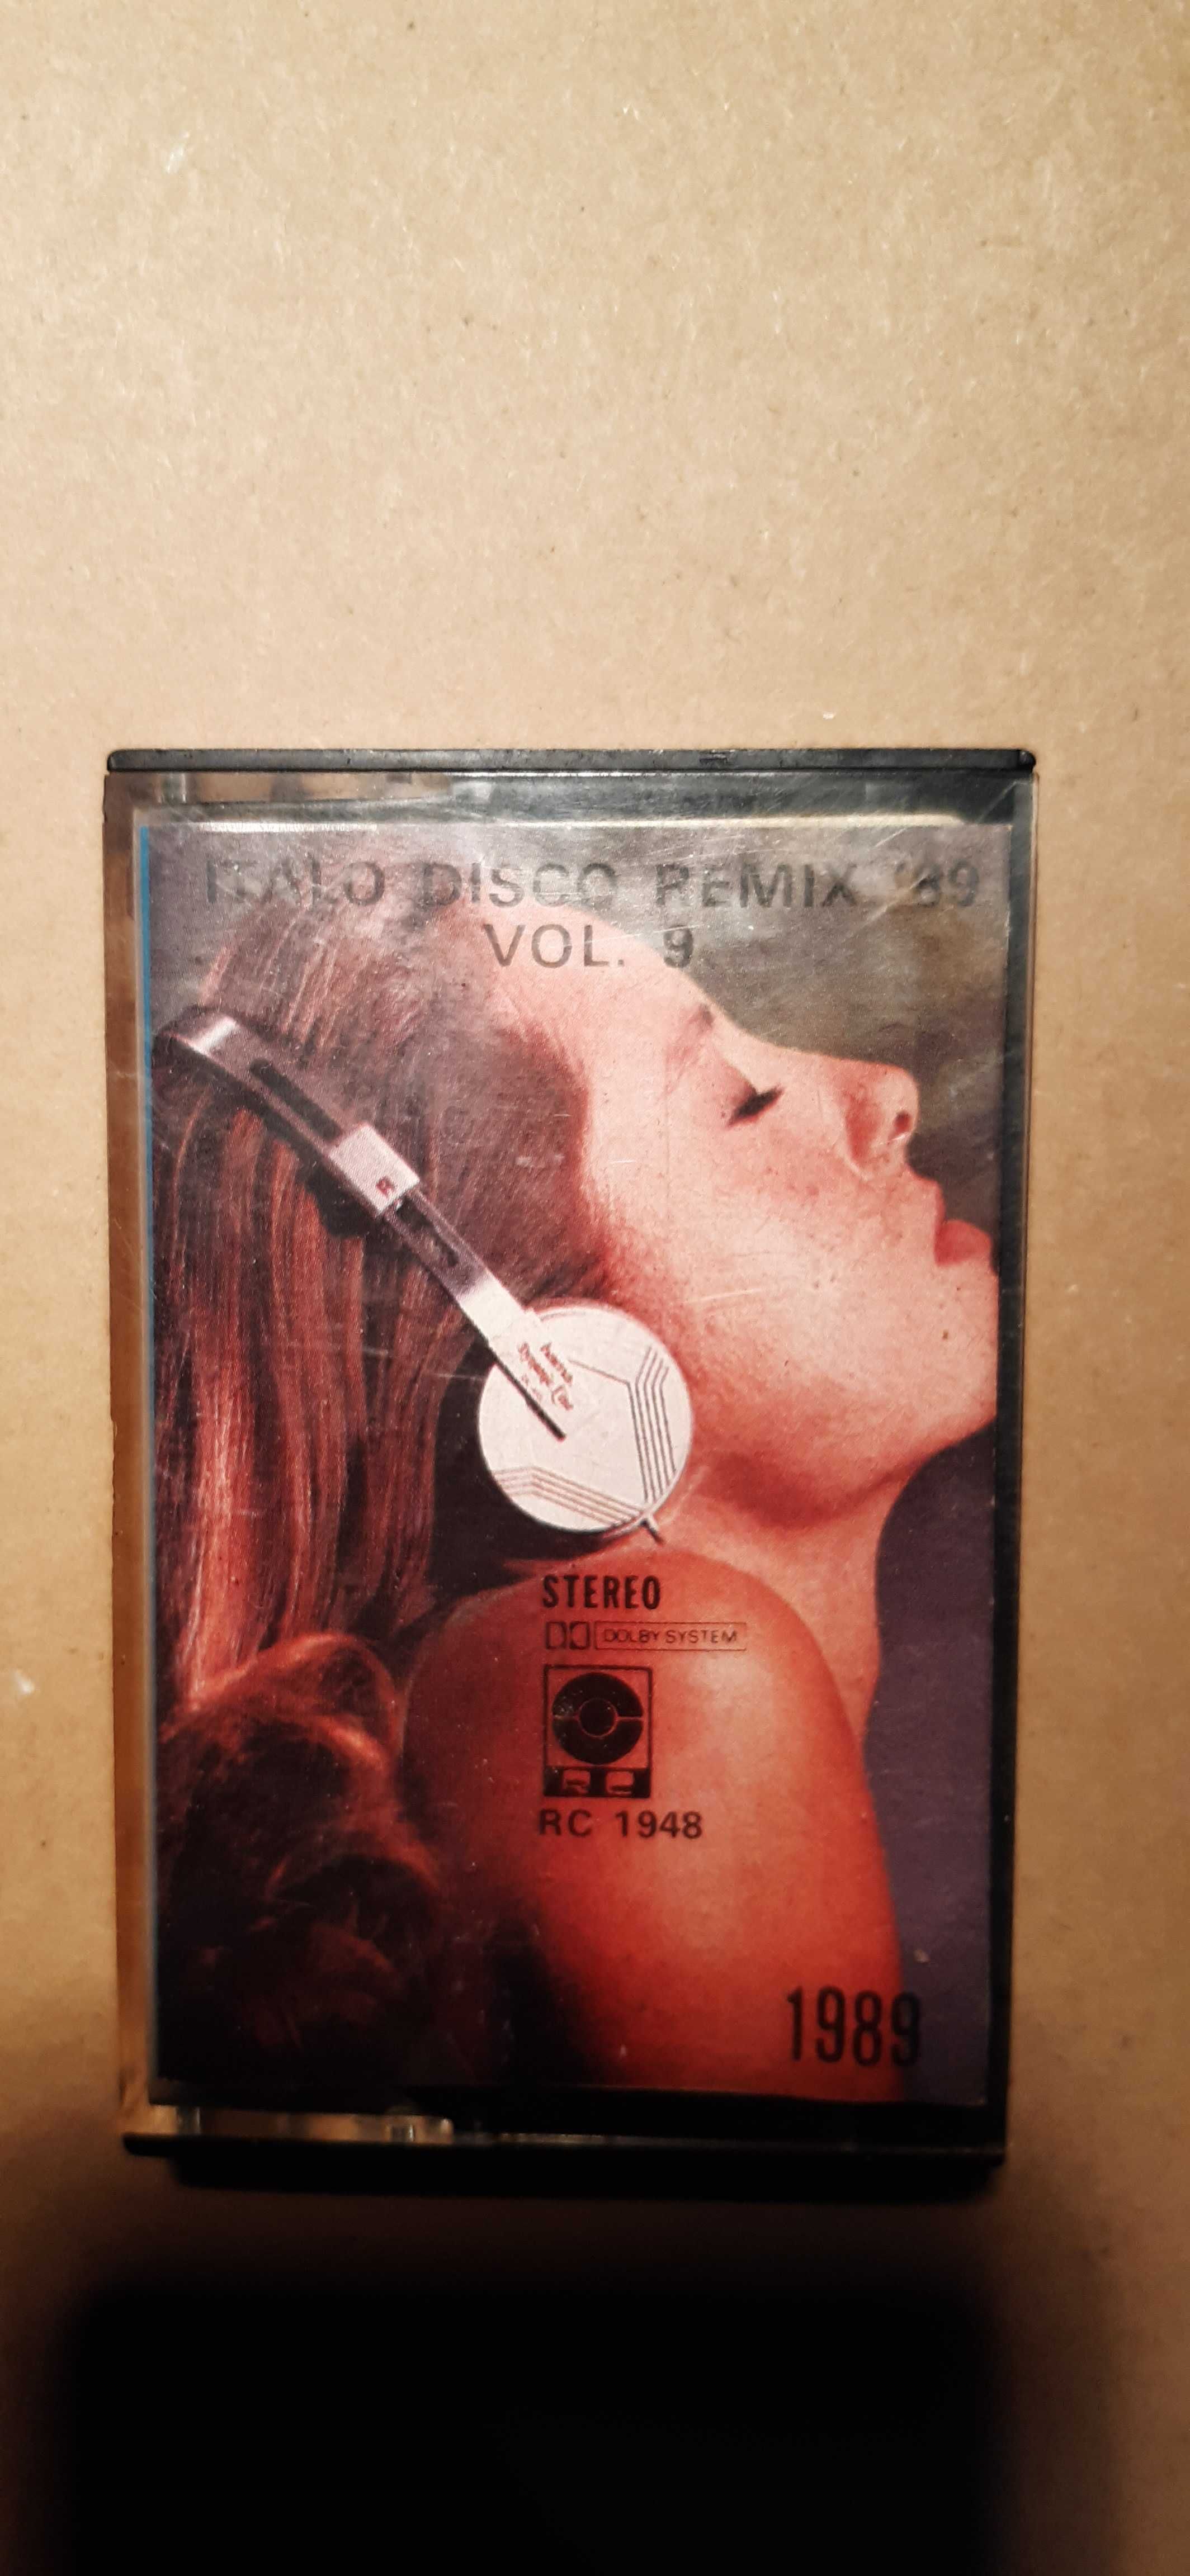 kaseta italo disco remix 89, unikat